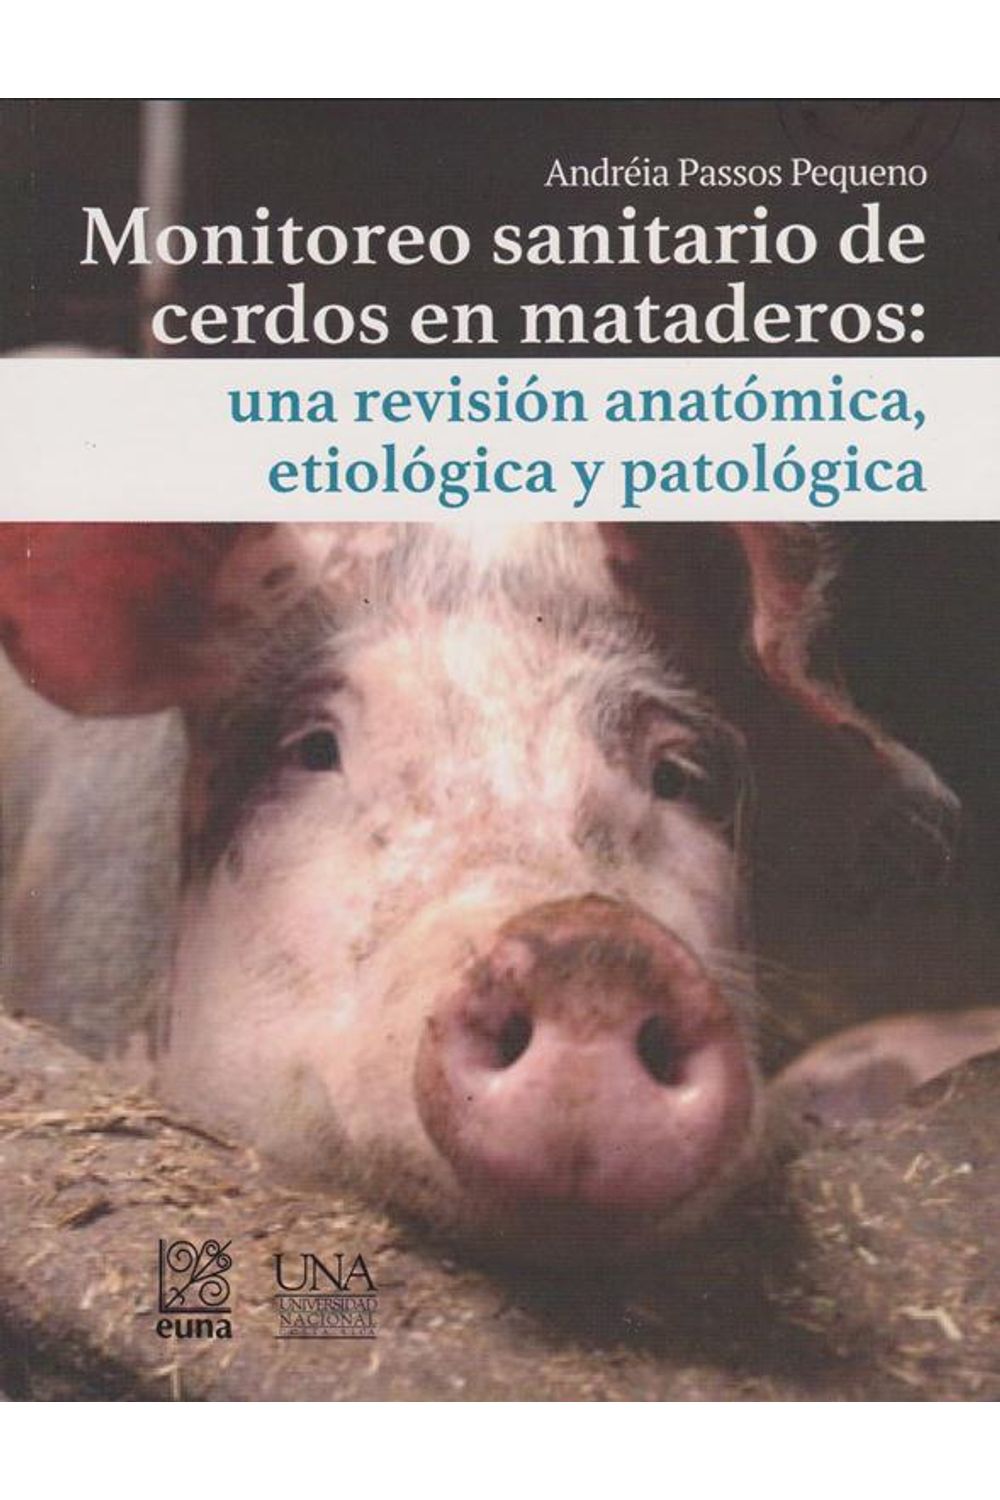 monitoreo-sanitario-de-cerdos-en-mataderos-una-revision-anatomica-etiologica-y-patologica-9789977654942-costa-rica-silu